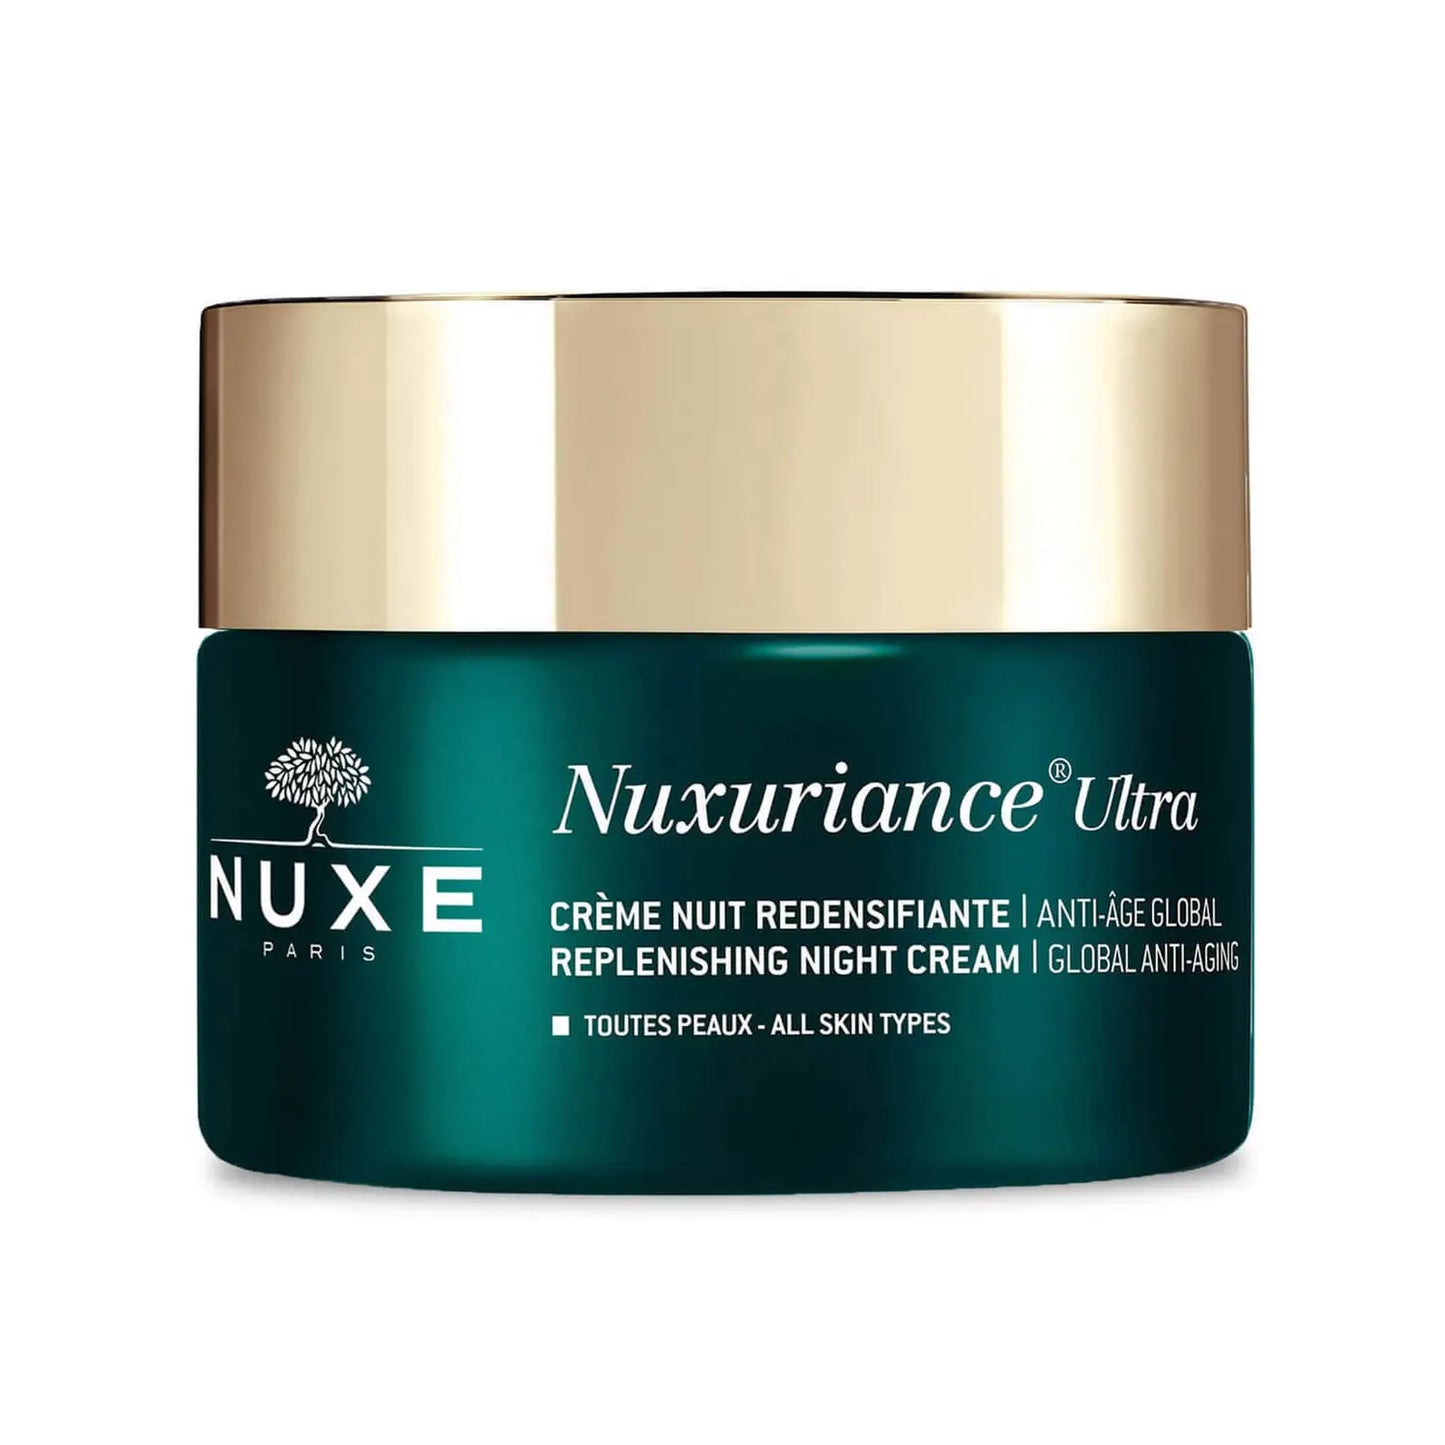 NUXE Paris Nuxuriance Replenishing Night Cream 50ml